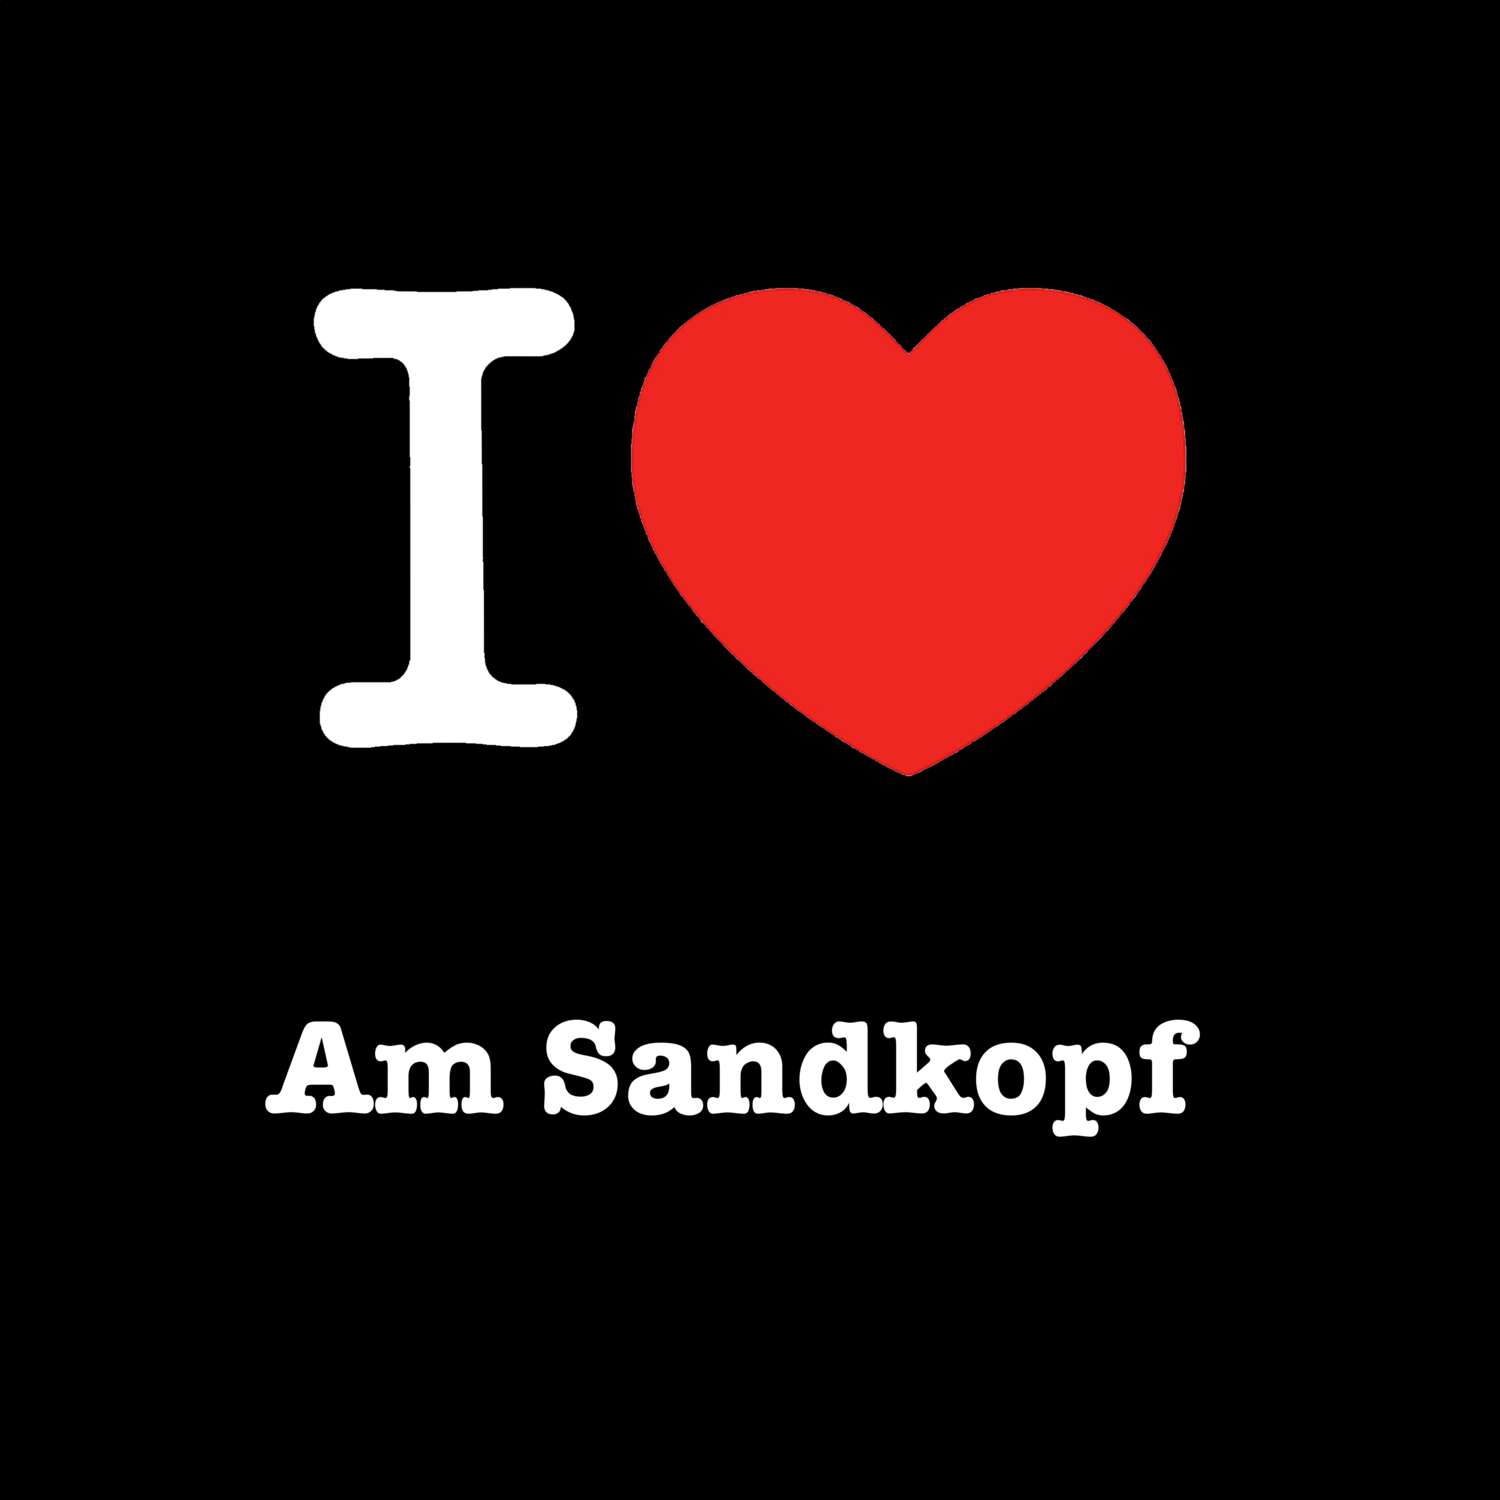 Am Sandkopf T-Shirt »I love«